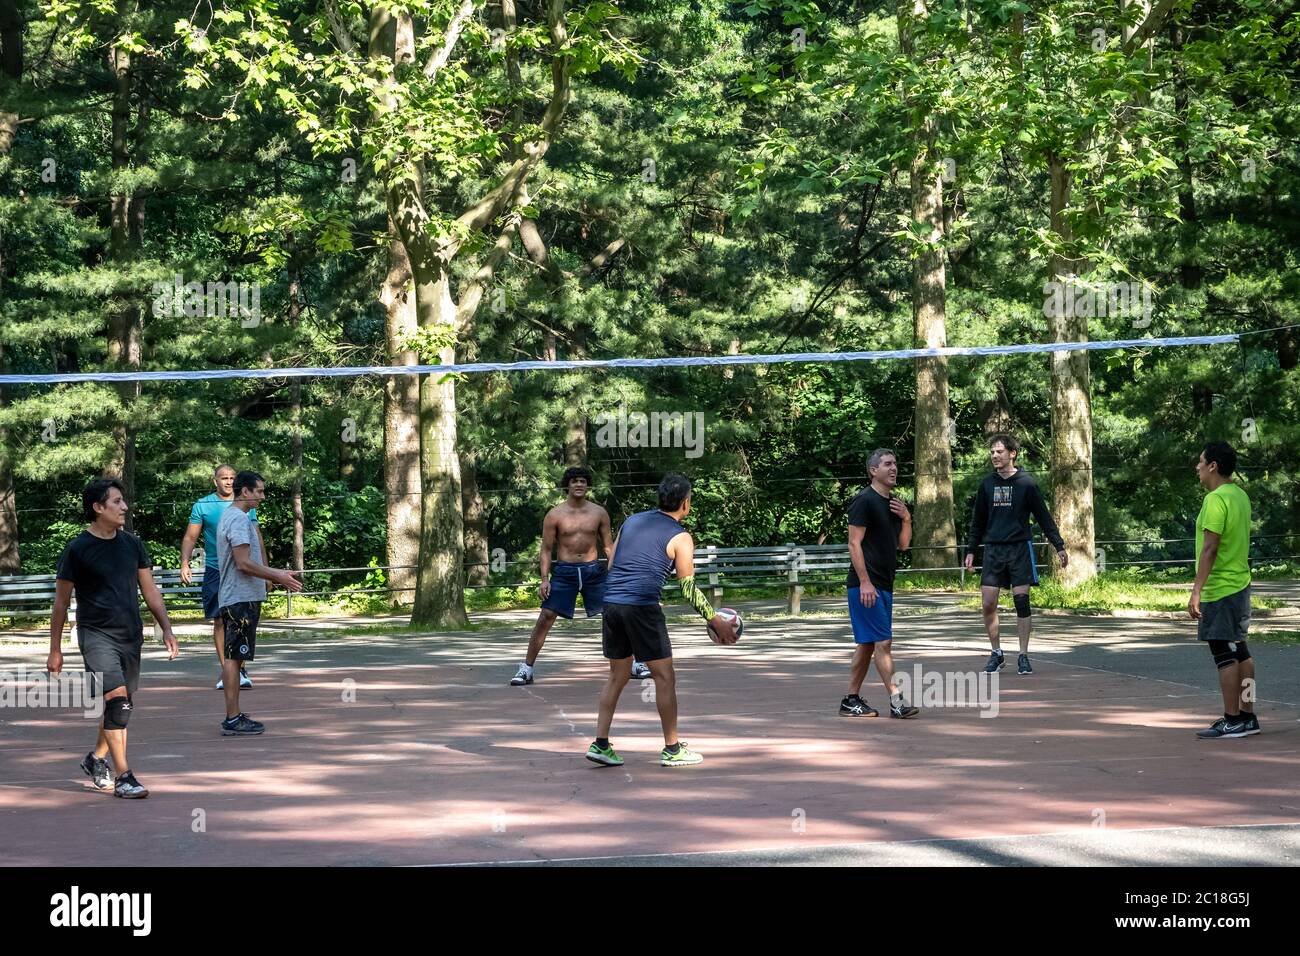 New York, USA. Juni 2020. Im Central Park spielen die Leute Volleyball, während die Stadt die Einschränkungen des Coronavirus-Ausbruchs lockert. Quelle: Enrique Shore/Alamy Live News Stockfoto